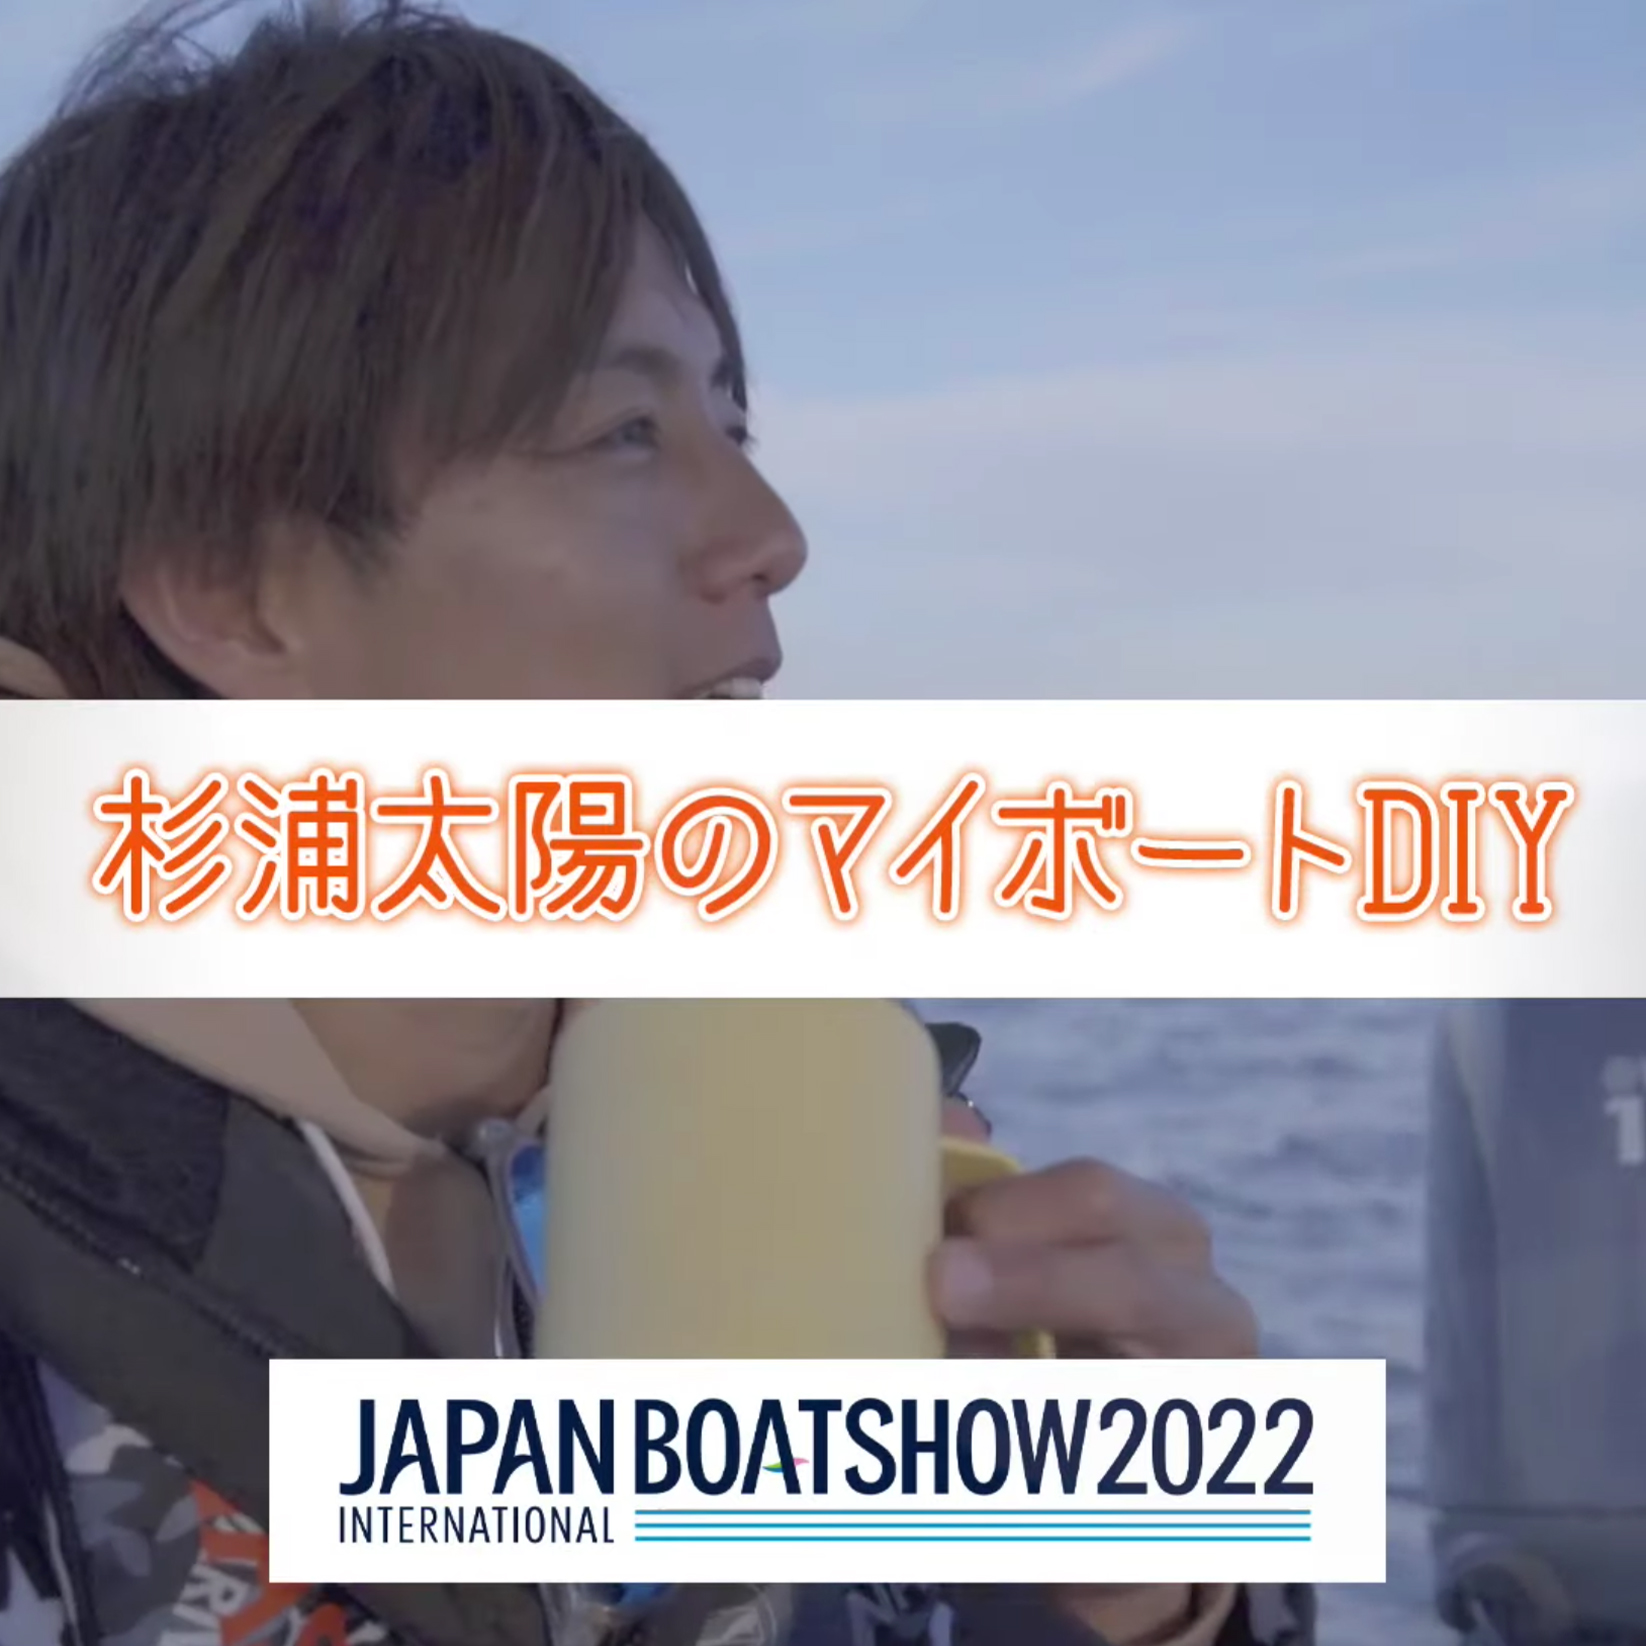 ジャパンボートショー2022特別企画「杉浦太陽のマイボートDIY」#1〜3